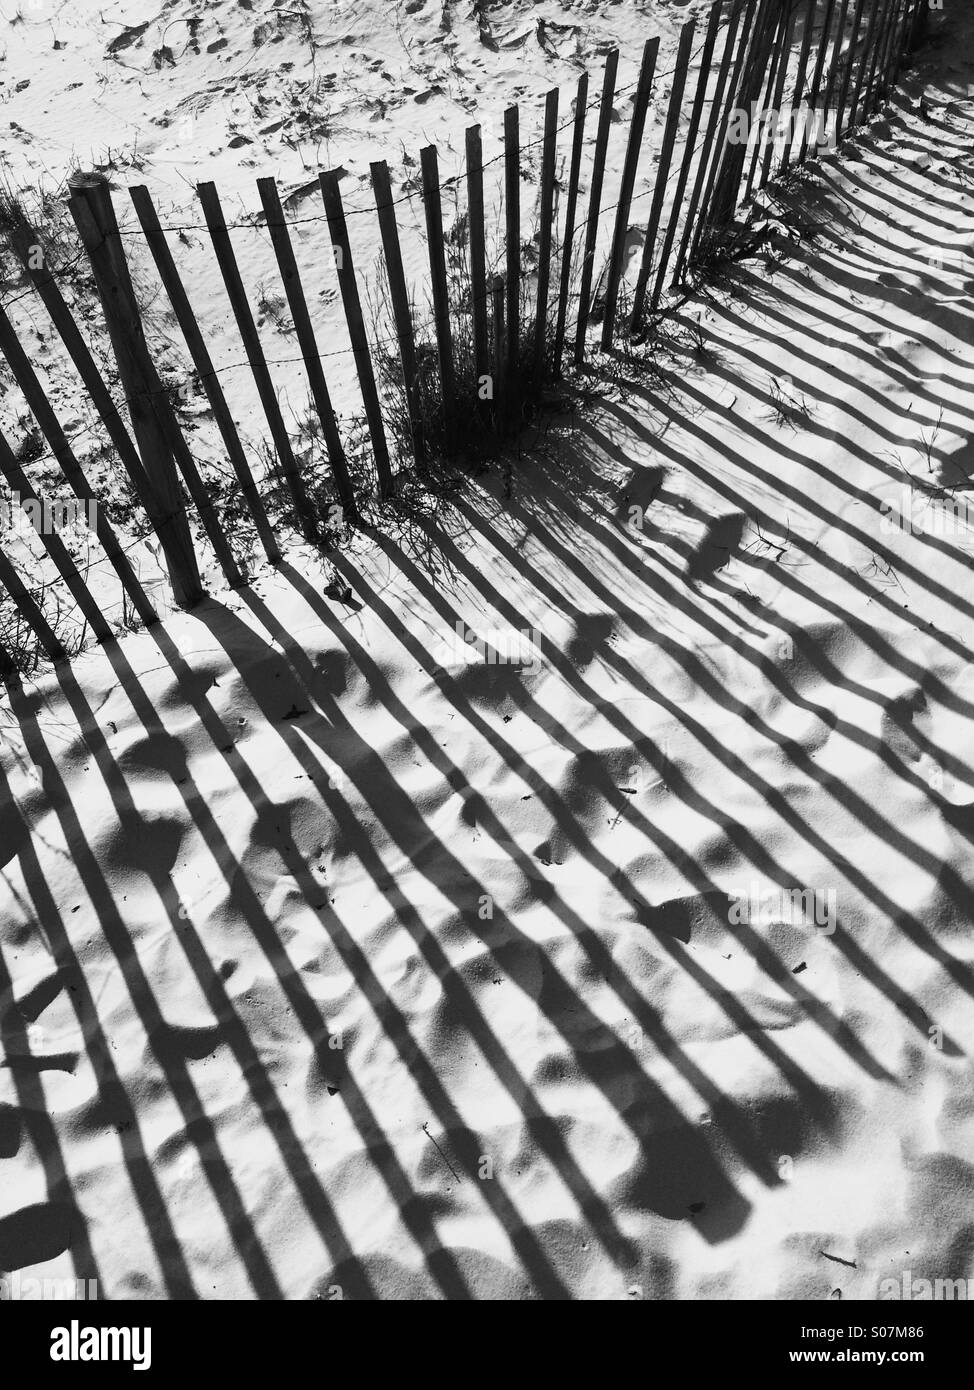 Schatten von einem Zaun aus Holz Strand in einer Sanddüne, in schwarz und weiß. Stockfoto